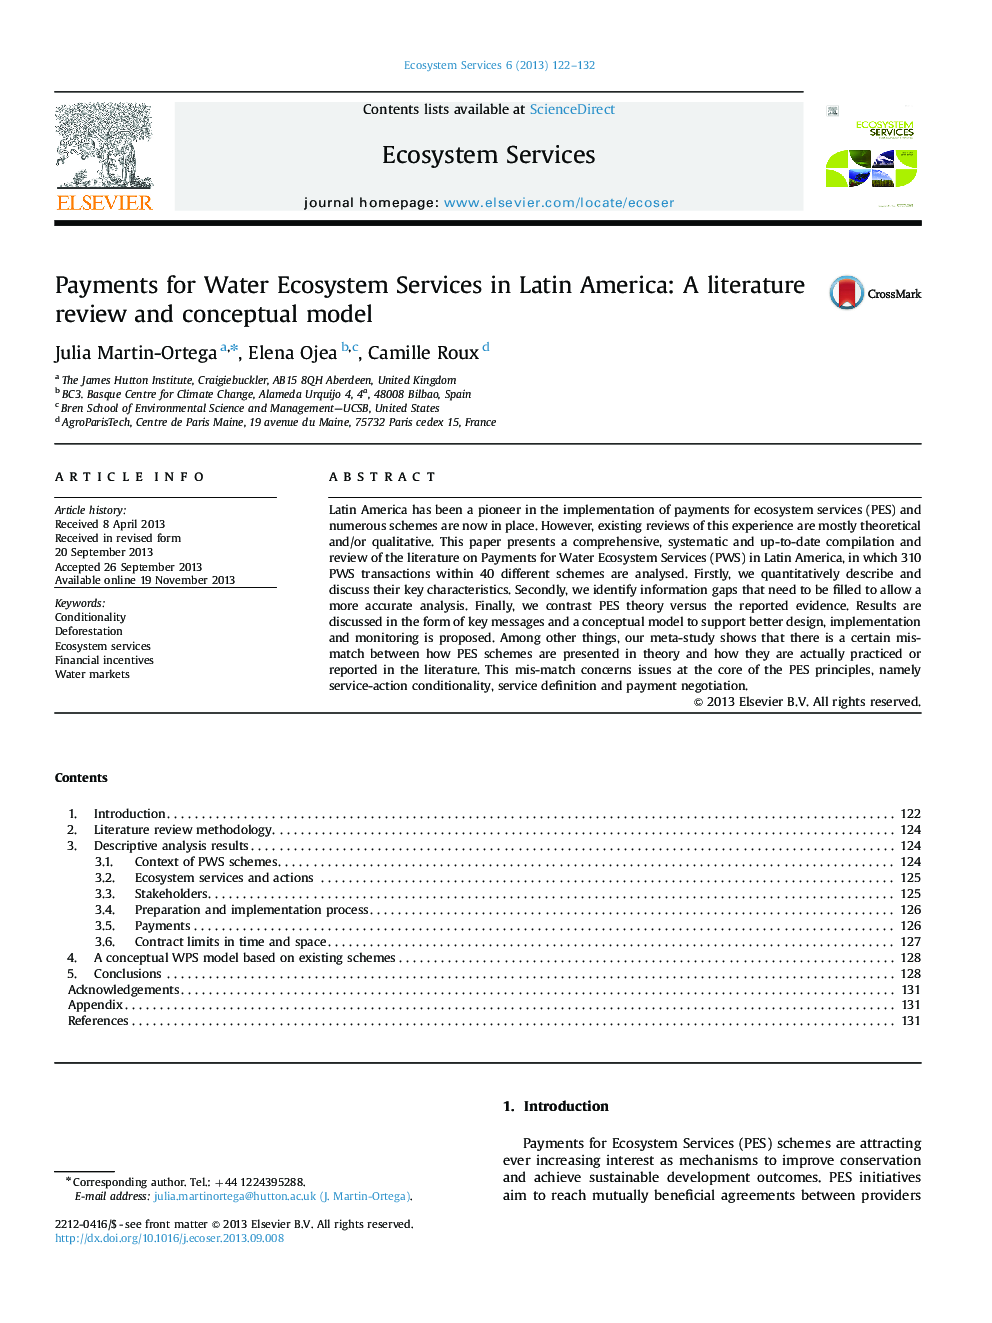 پرداخت برای خدمات اکوسیستم آب در آمریکای لاتین: بررسی ادبیات و مدل مفهومی 